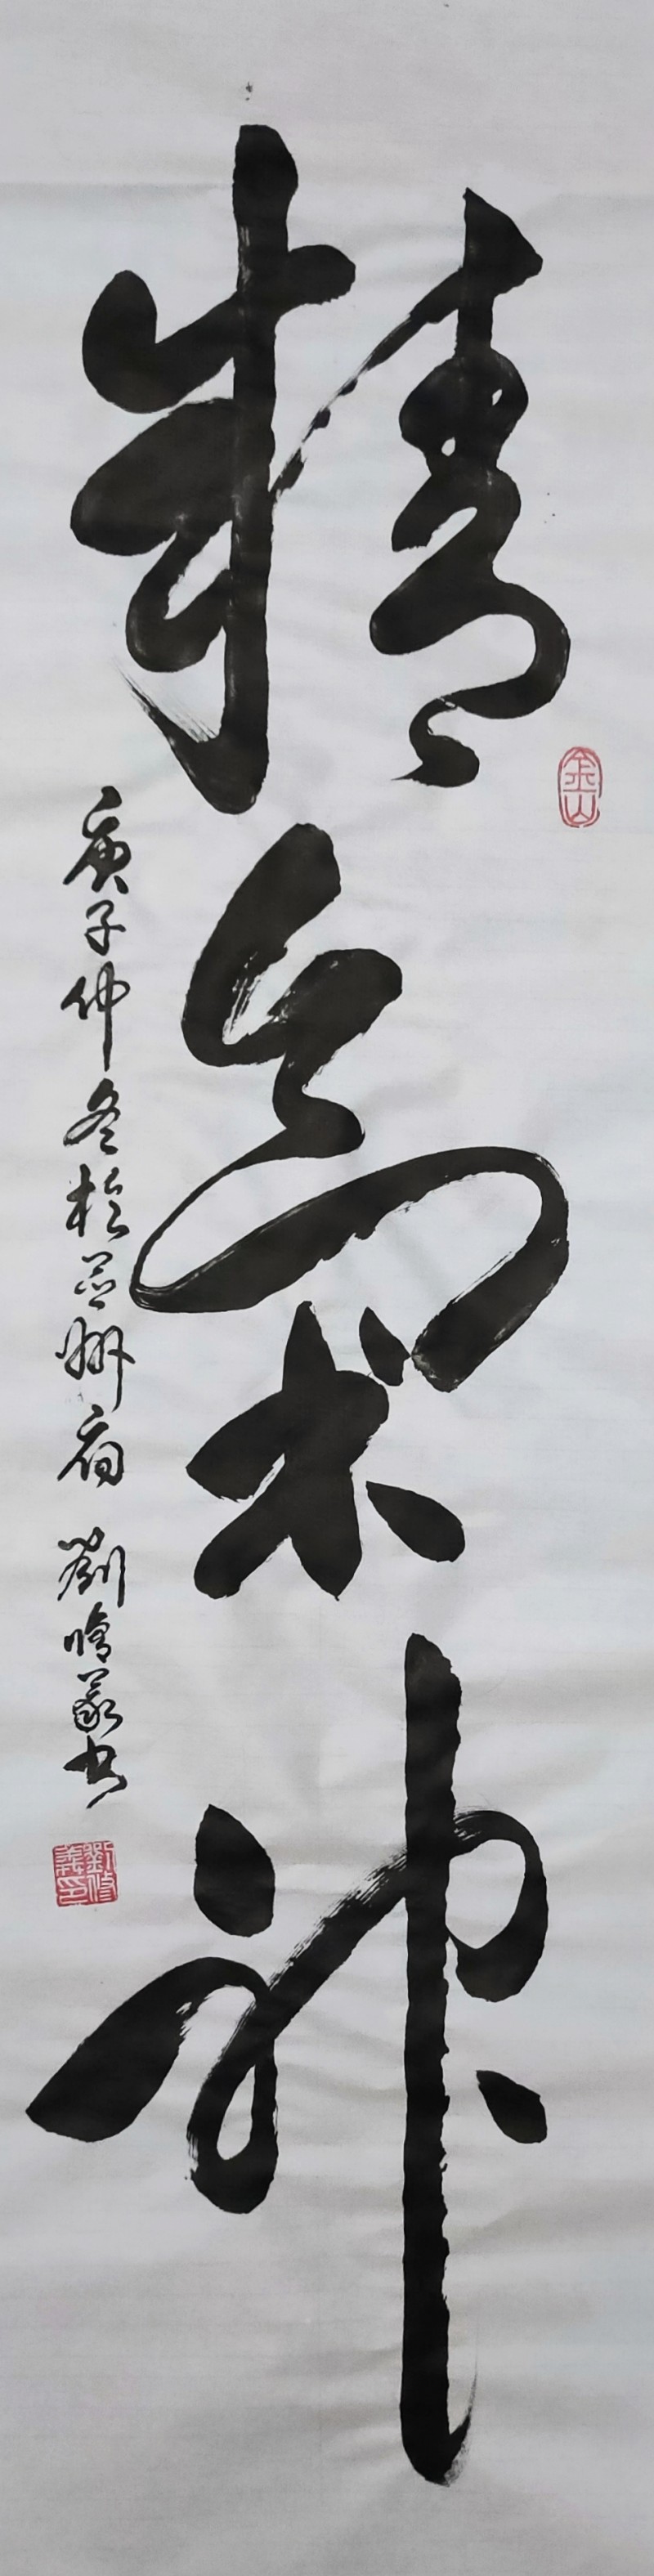 刘修义——中宣盛世国际书画院会员、著名书画家